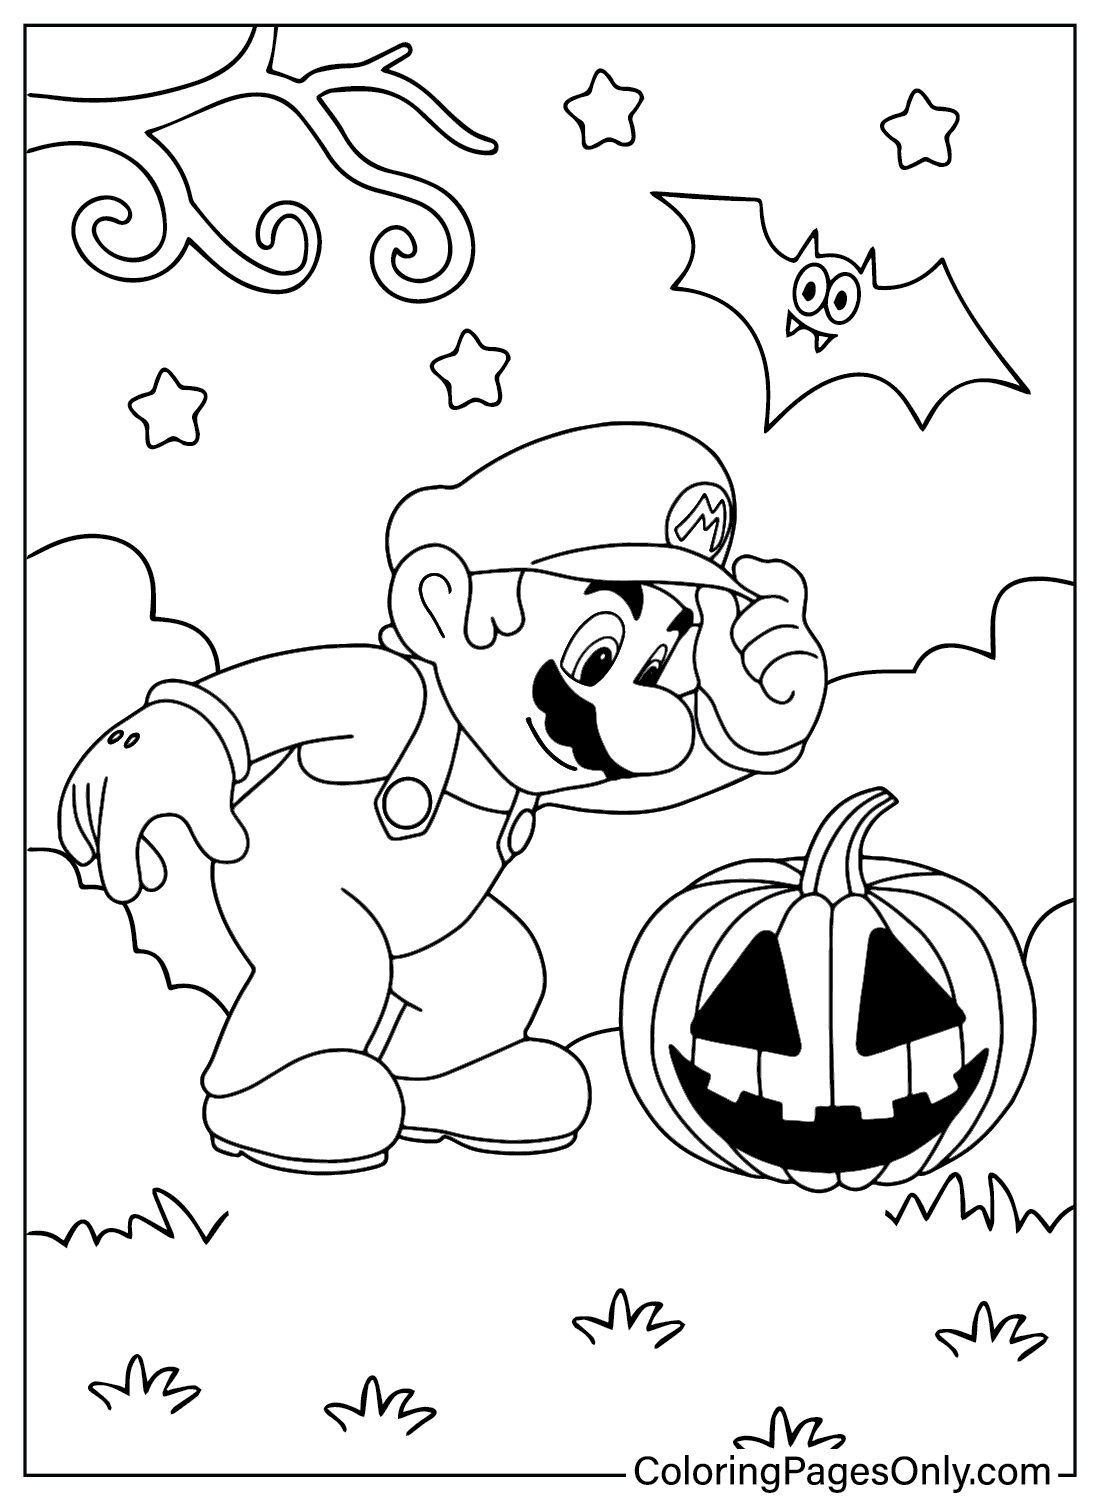 Página para colorear de Mario Halloween gratis de Mario Halloween